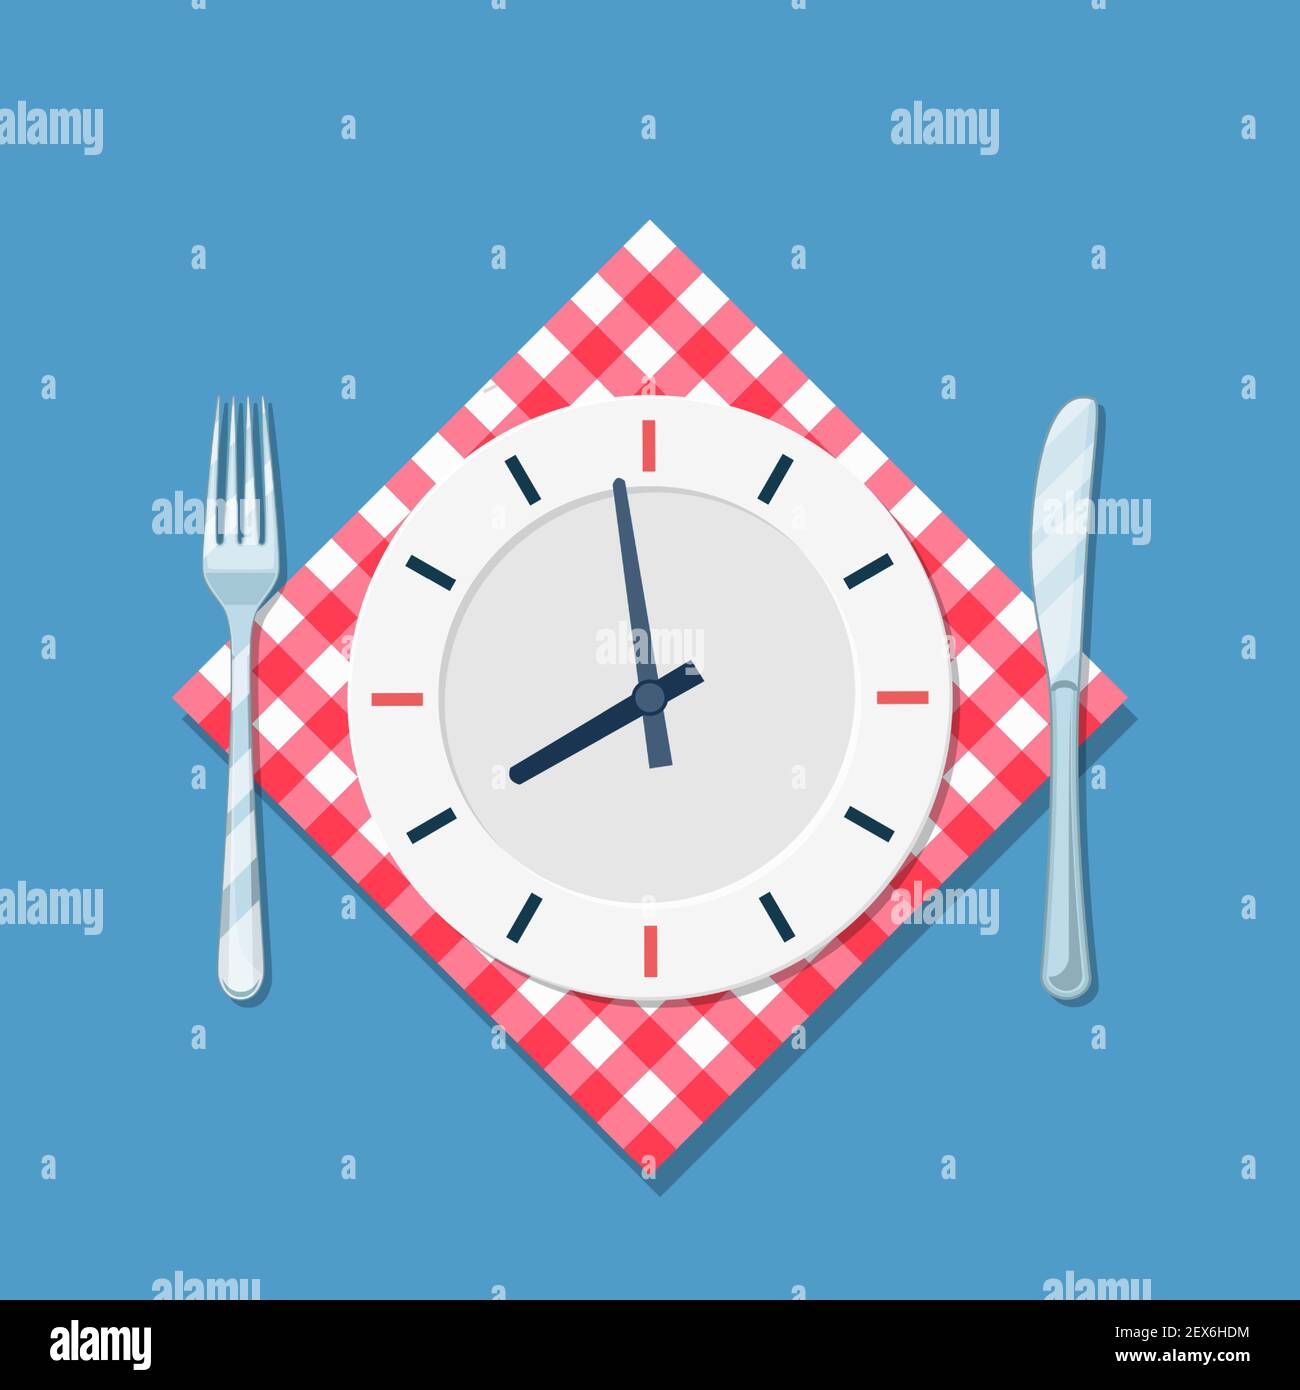 Teller mit Uhr, Gabel und Messer Symbol Stock-Vektorgrafik - Alamy